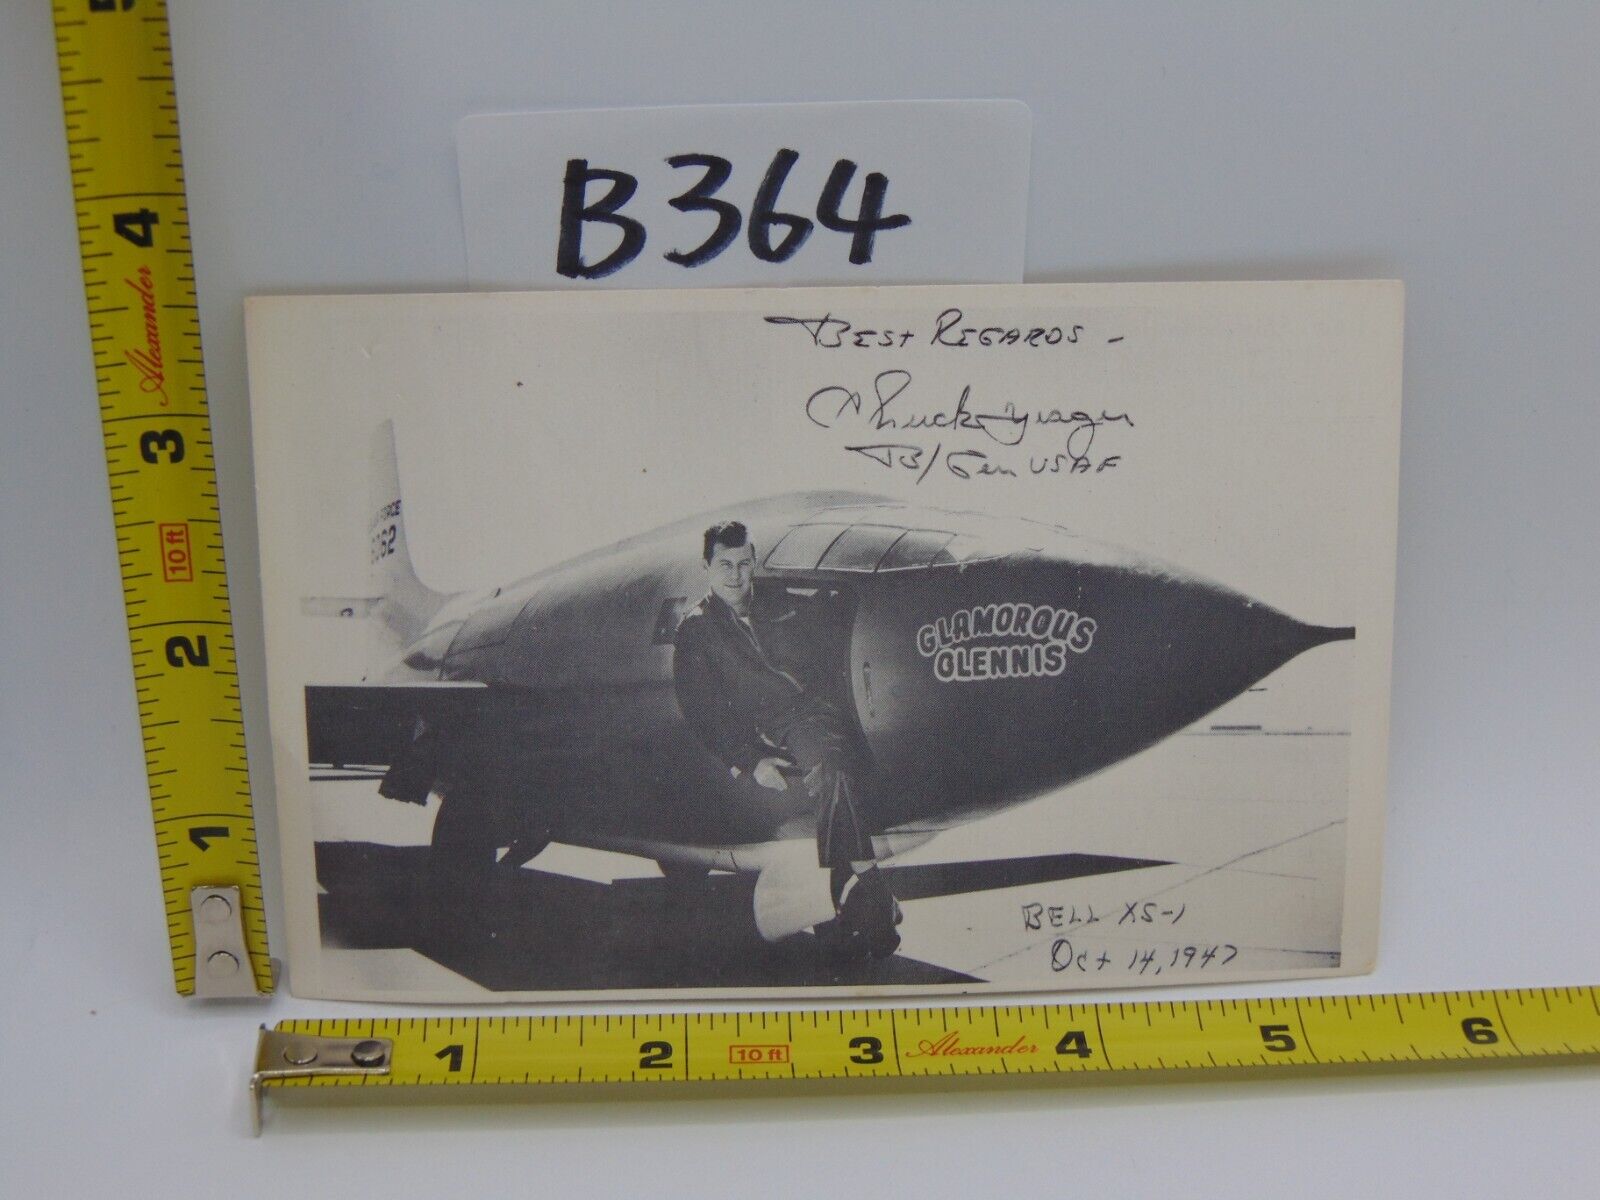 TEST PILOT CHUCK YEAGER BELL XS-1 SOUND BARRIER FLIGHT PHOTO POSTCARD